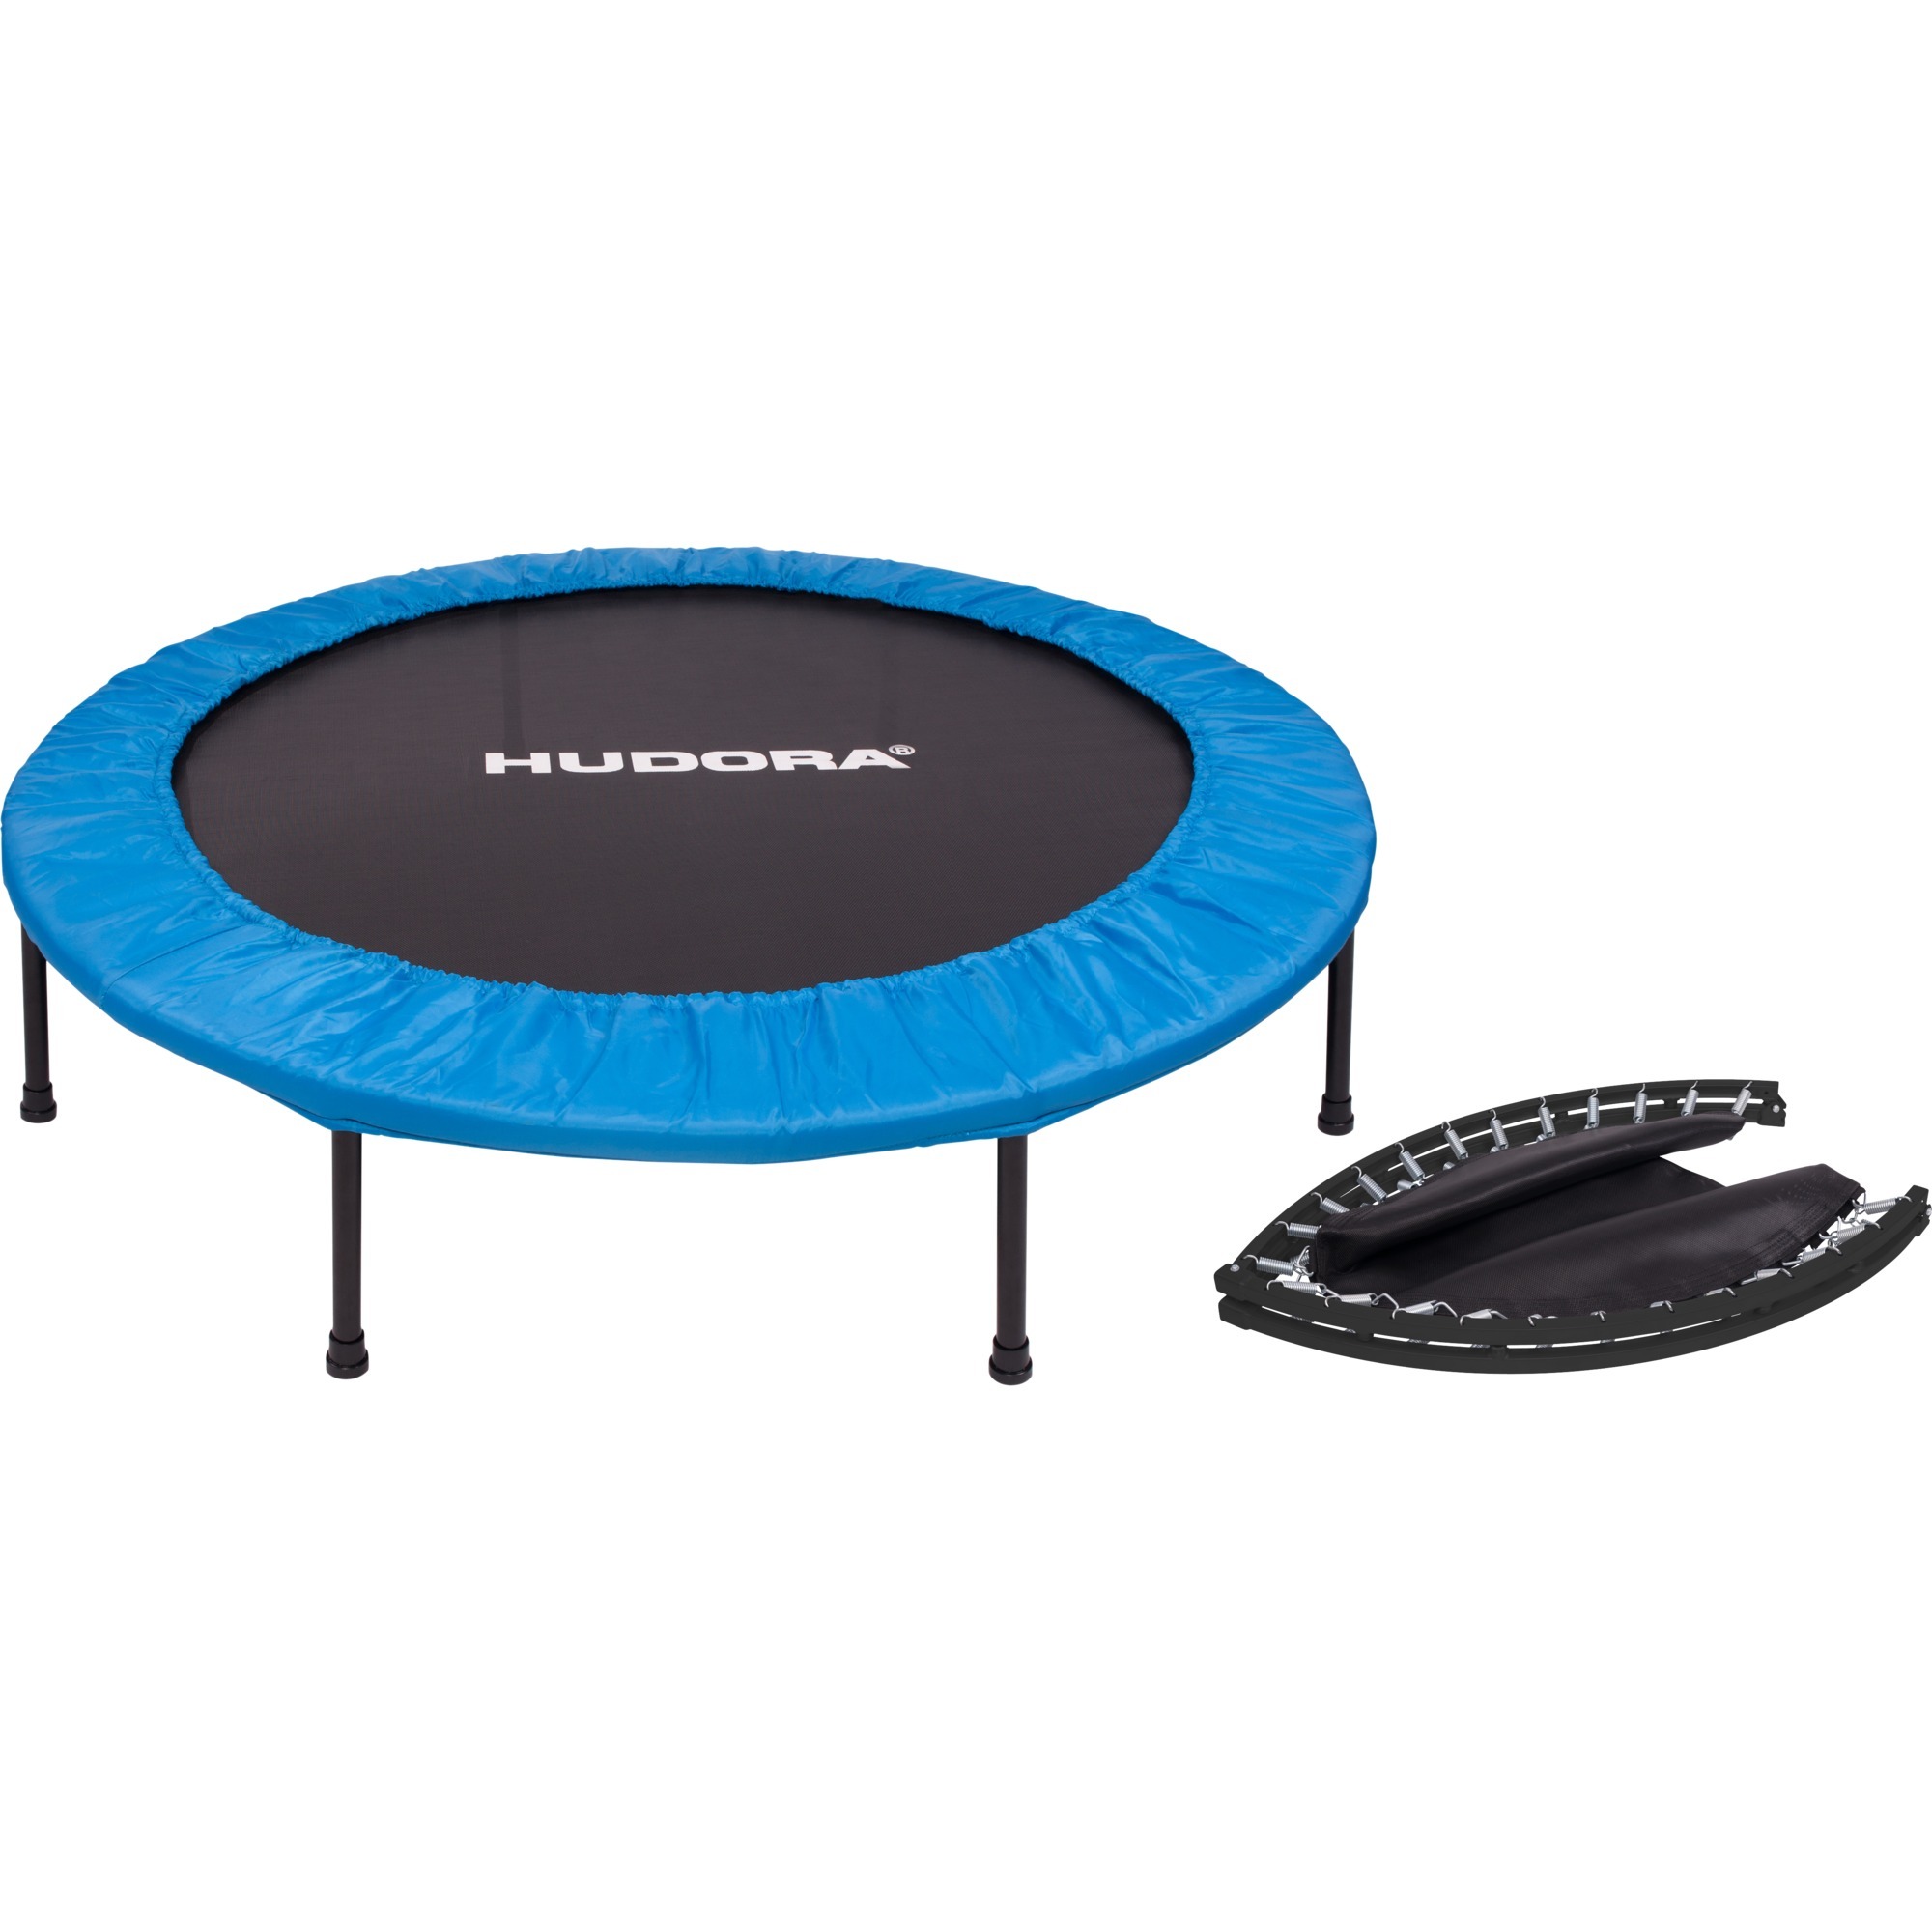 65408 Runda trampolina treningowa, Sprzęt fitness